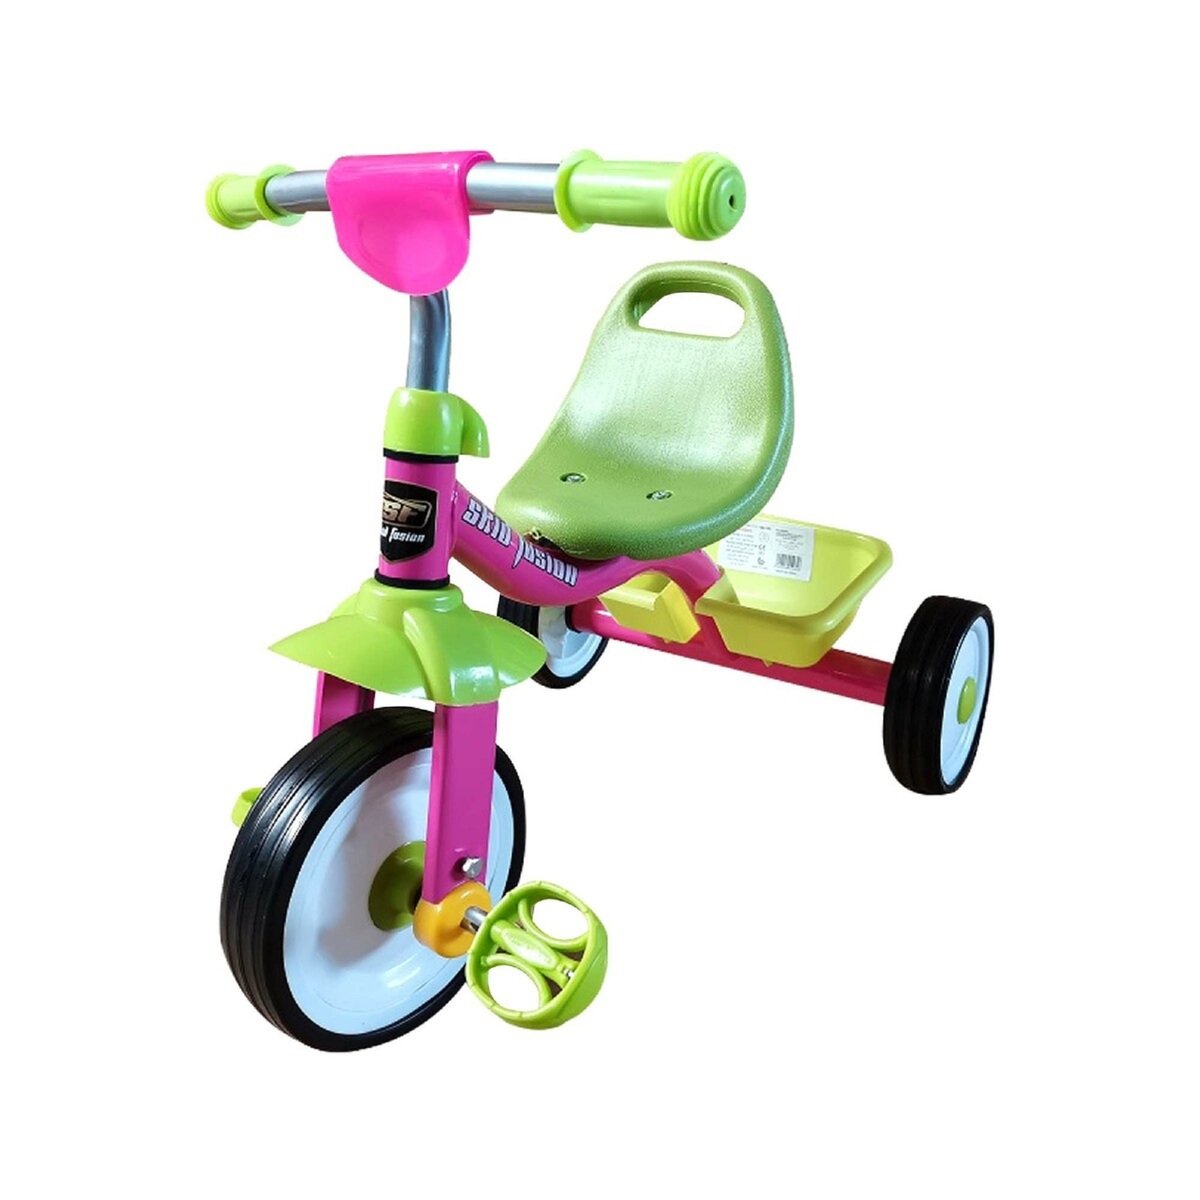 Skid Fusion Kids Tri-Cycle YQM-988